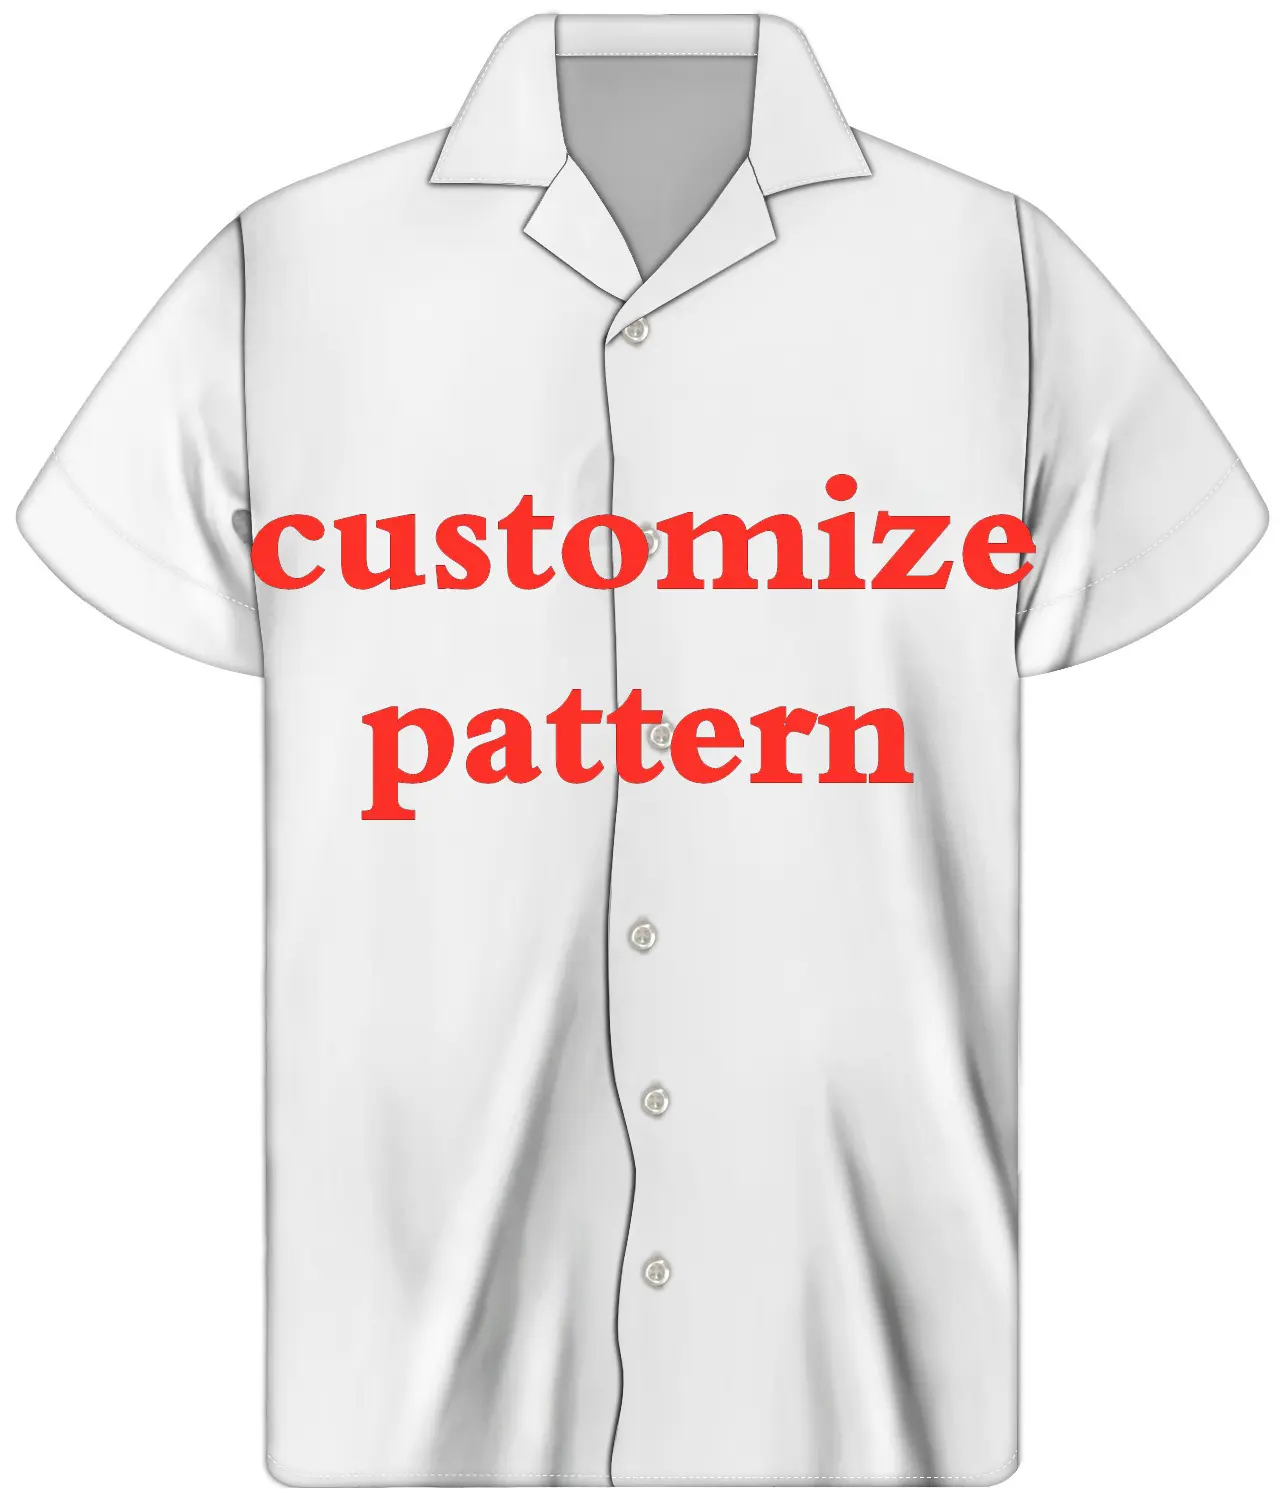 USA Größe Hawaiian Shirts Benutzer definierte Kunstwerk Baumwolle Viskose Button Up Aloha Shirts